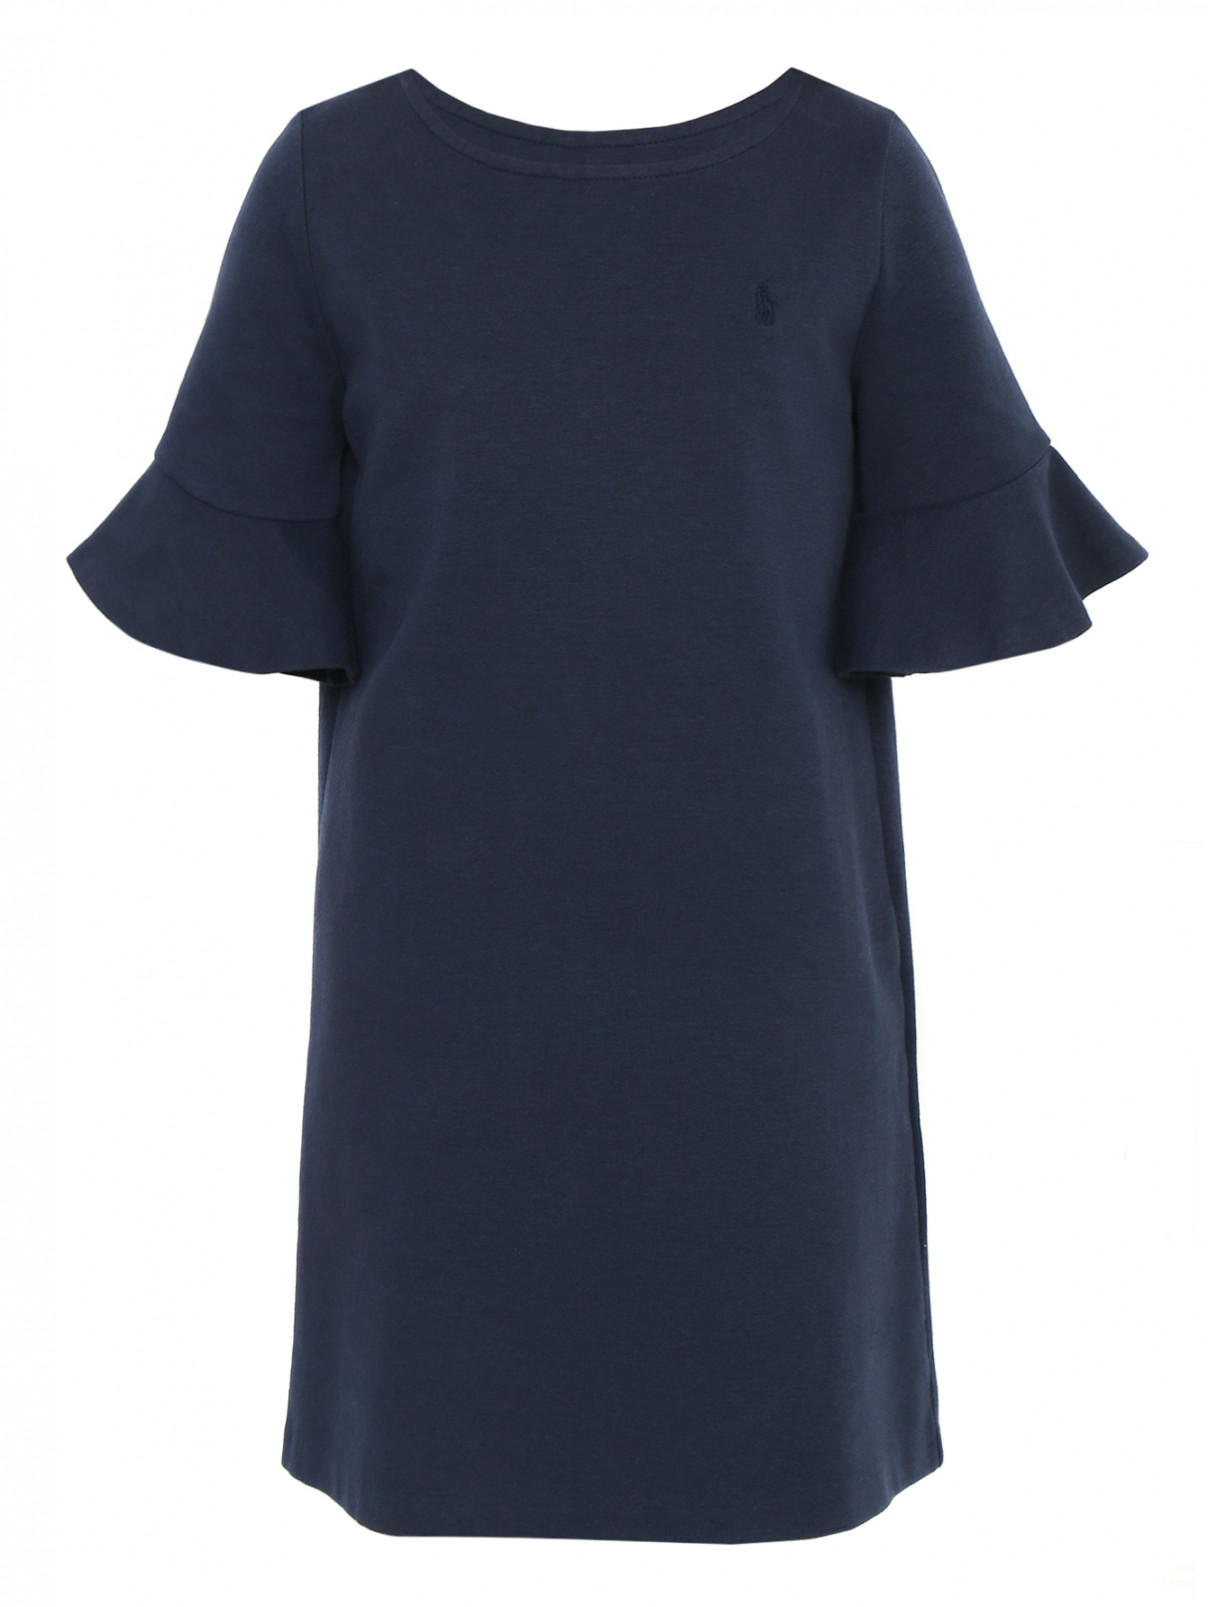 Платье трикотажное с оборками на рукавах Ralph Lauren  –  Общий вид  – Цвет:  Синий